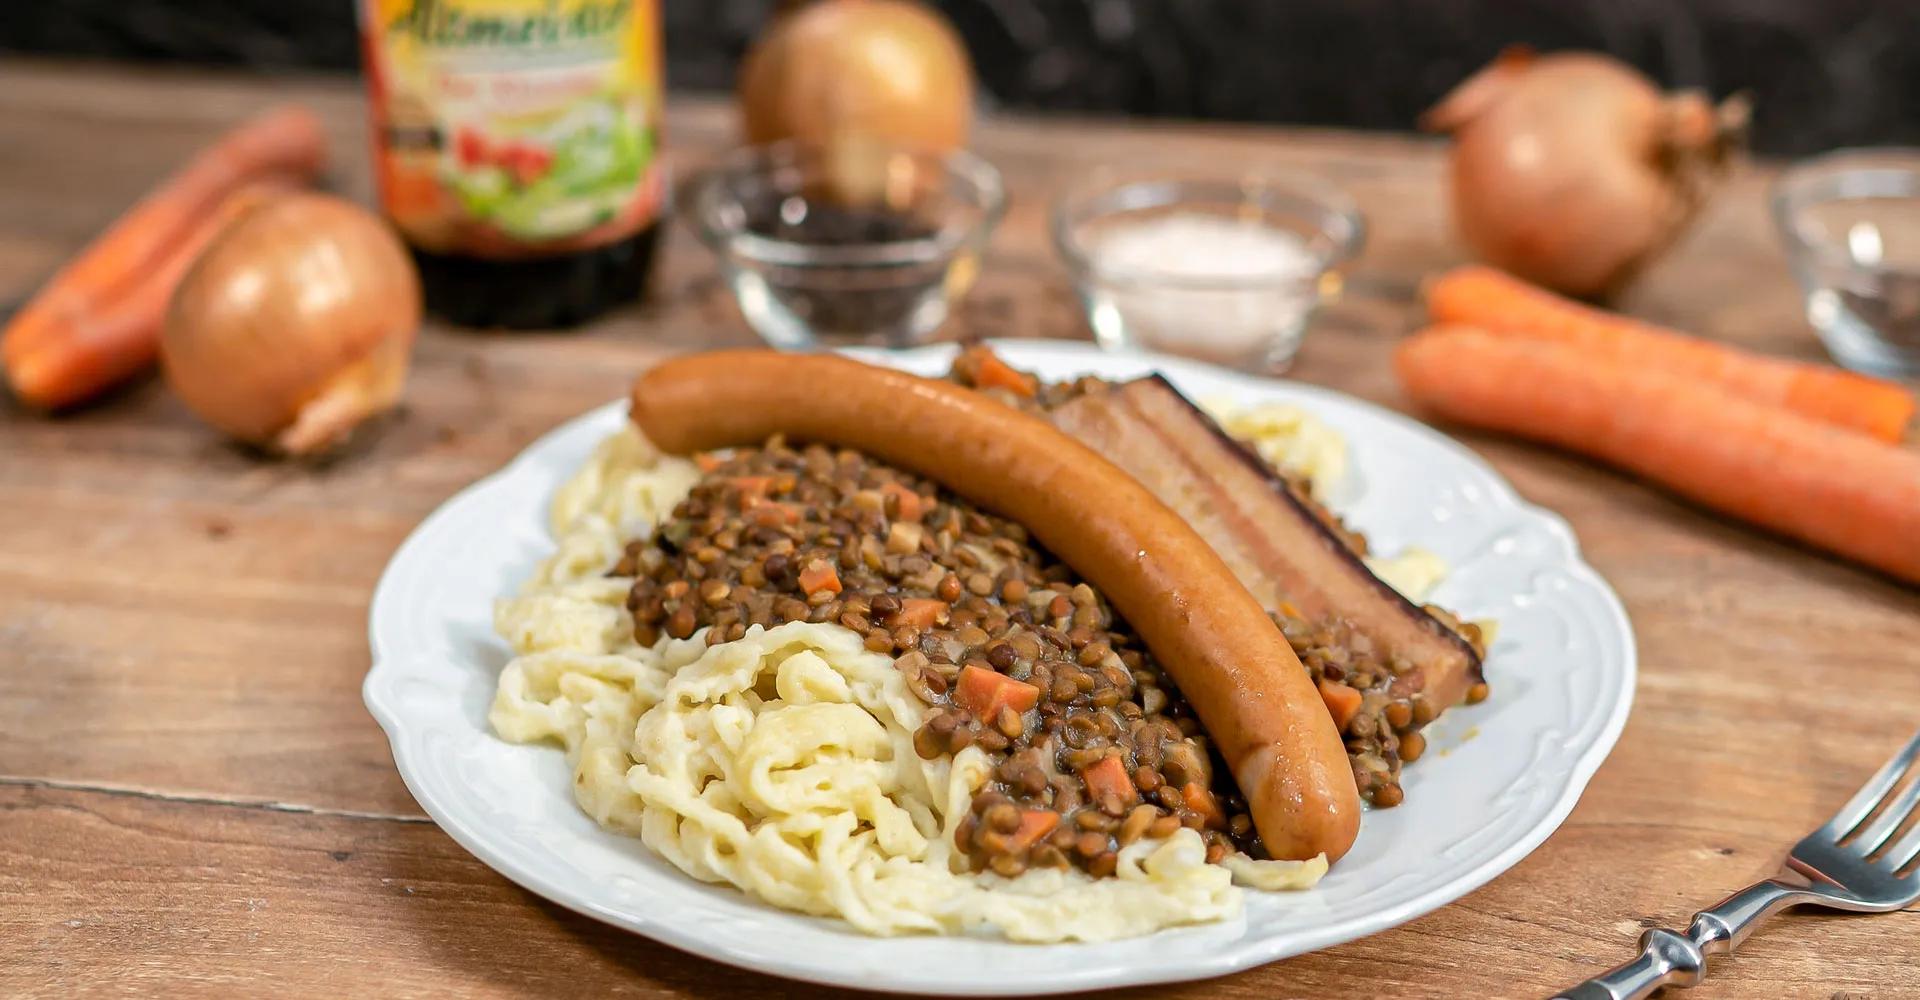 Swabian Lentils with Spaetzle and Frankfurters | Hengstenberg